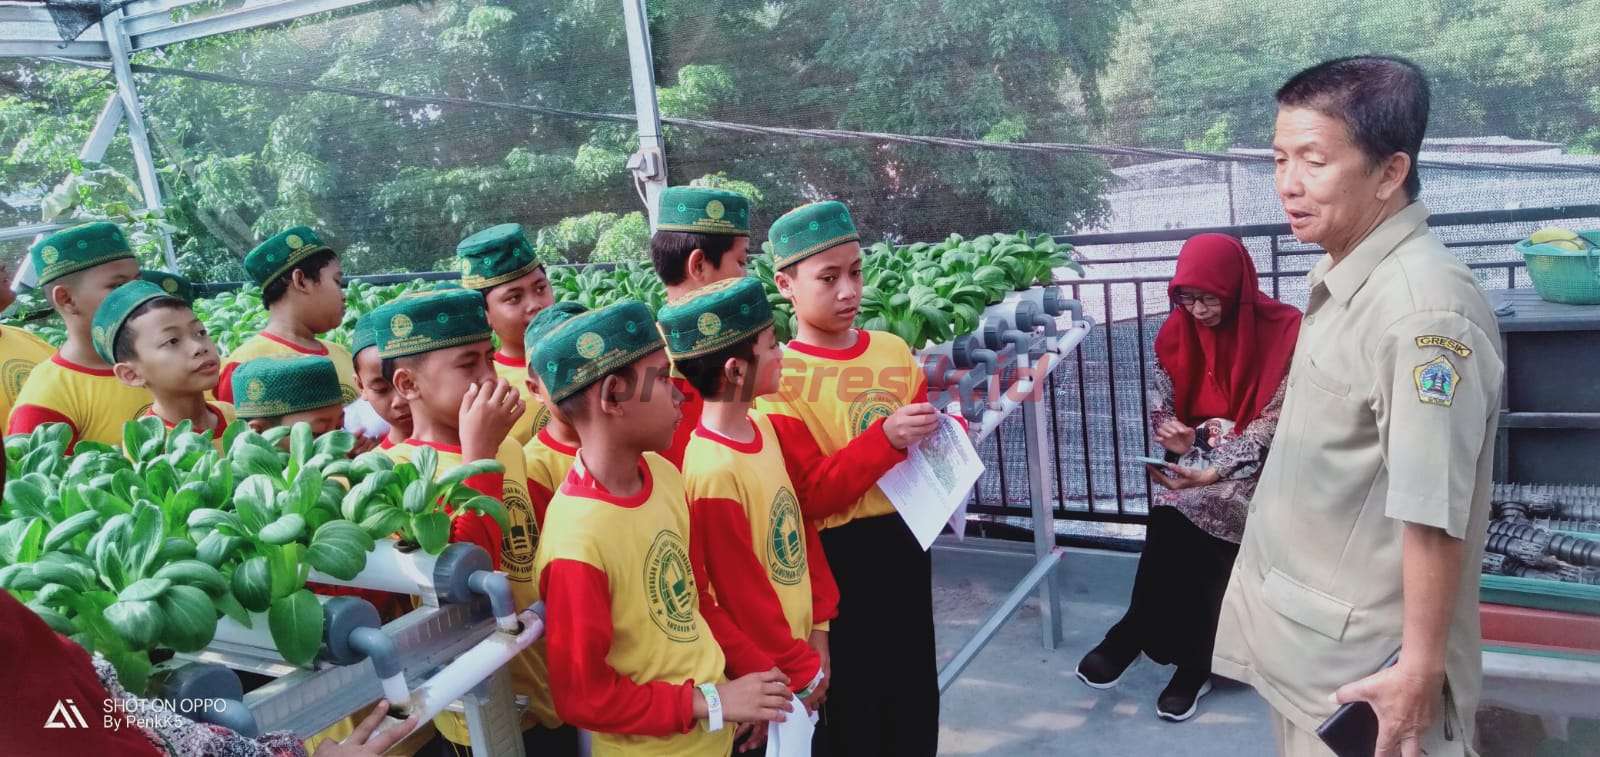 Kepala Desa Klangonan Muhammad Ajir Sayuthi Spd saat mendampingi Anak- anak sekolah lakukan eduwisata di Green House Klangonan Lestari Desa Klangonan,Selasa ( 17/10/2022).